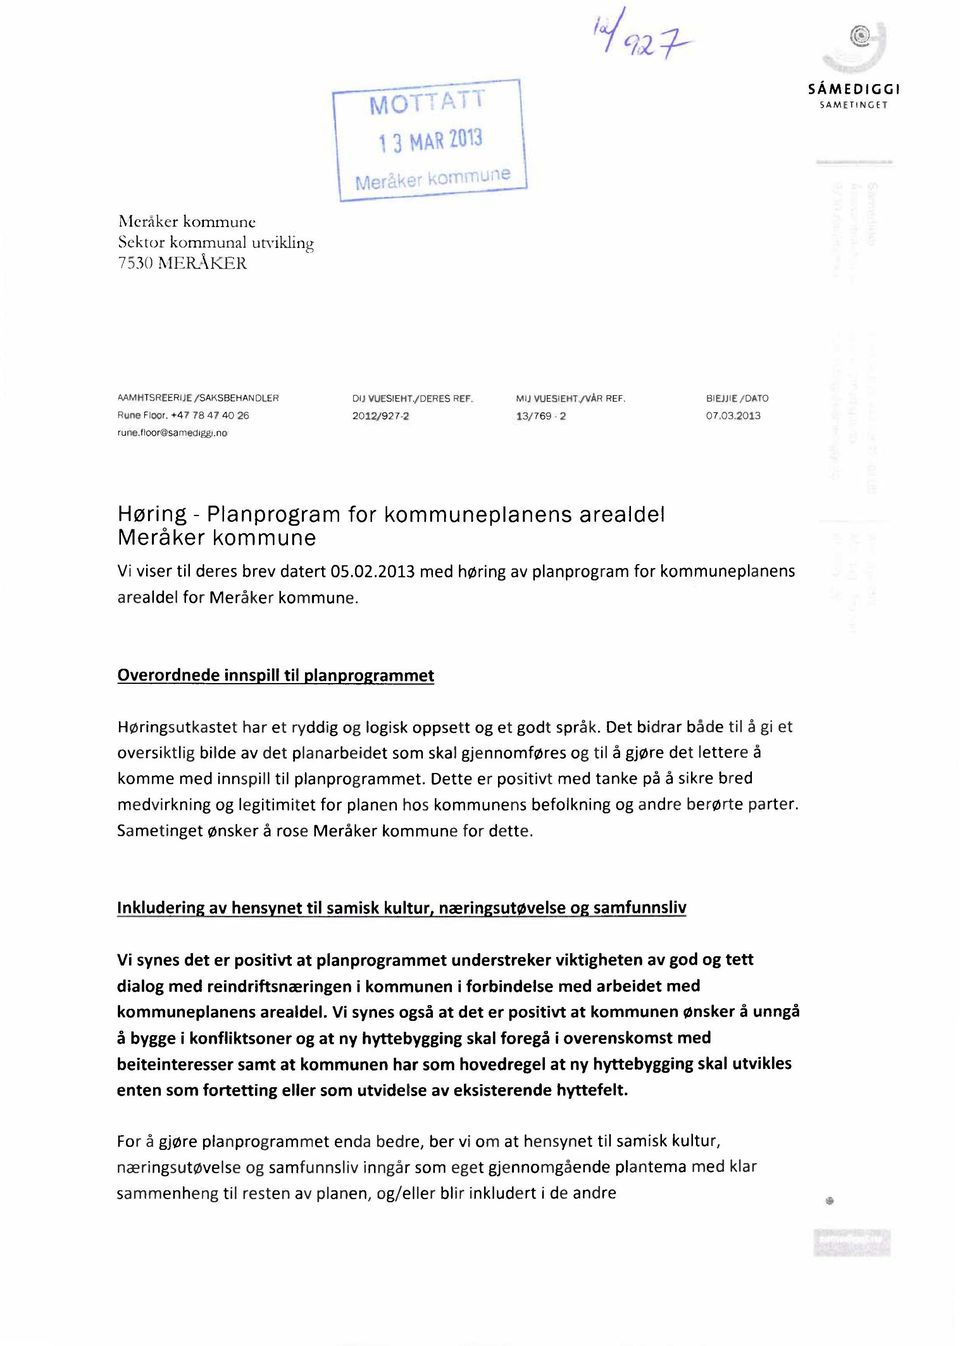 2013 med høring av planprogram for kommuneplanens arealdel for Meråker kommune. Overordnede innspill til planprogrammet Høringsutkastet har et ryddig og logisk oppsett og et godt språk.